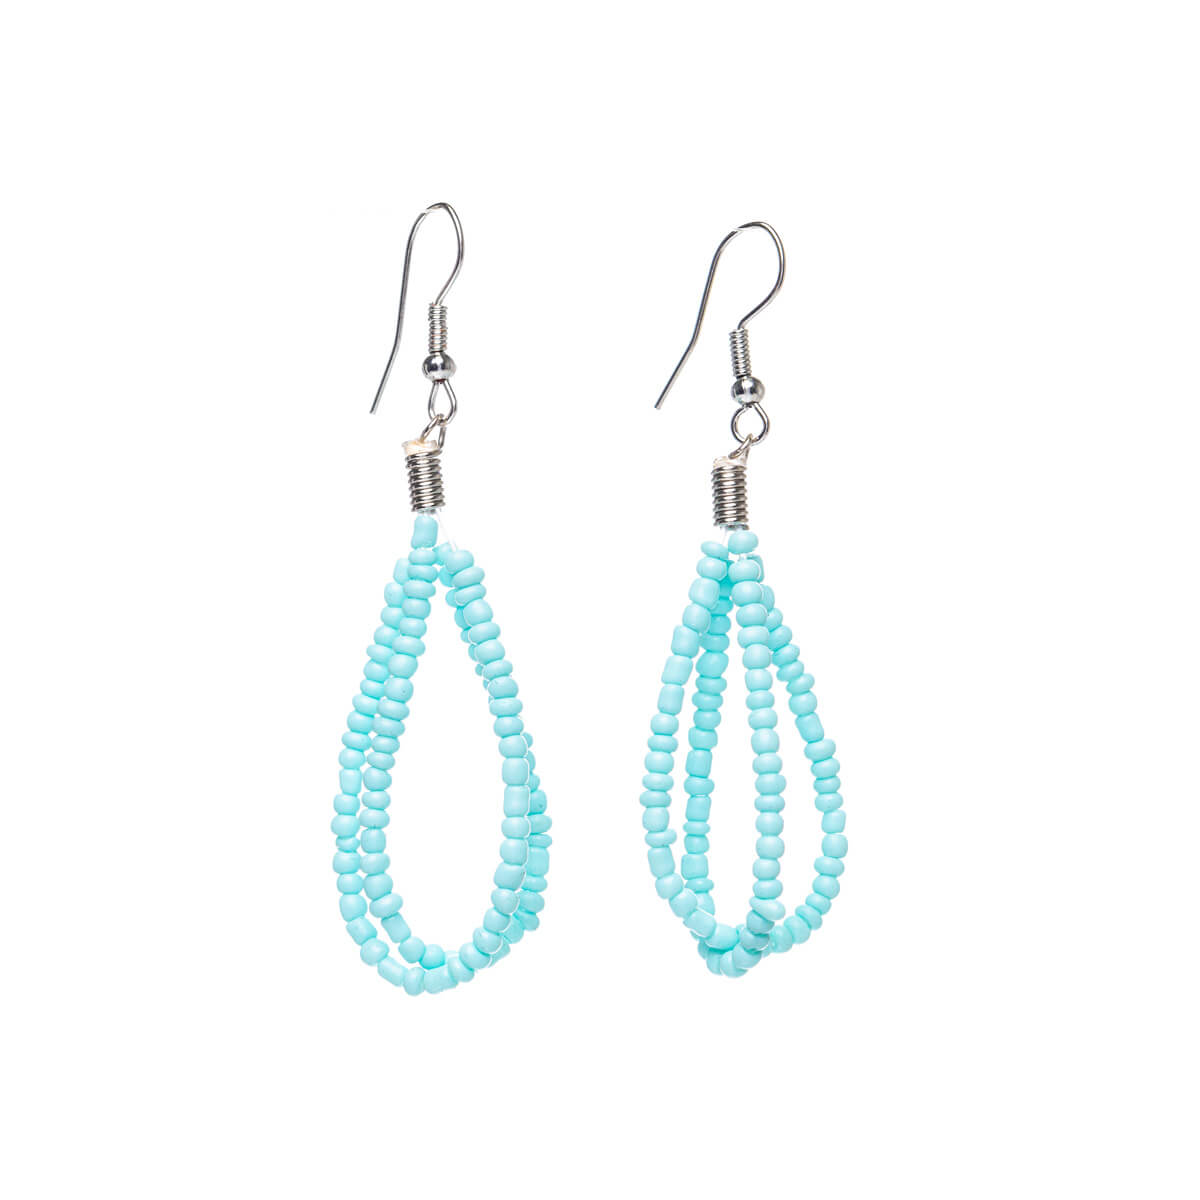 Pearl ribbon earrings